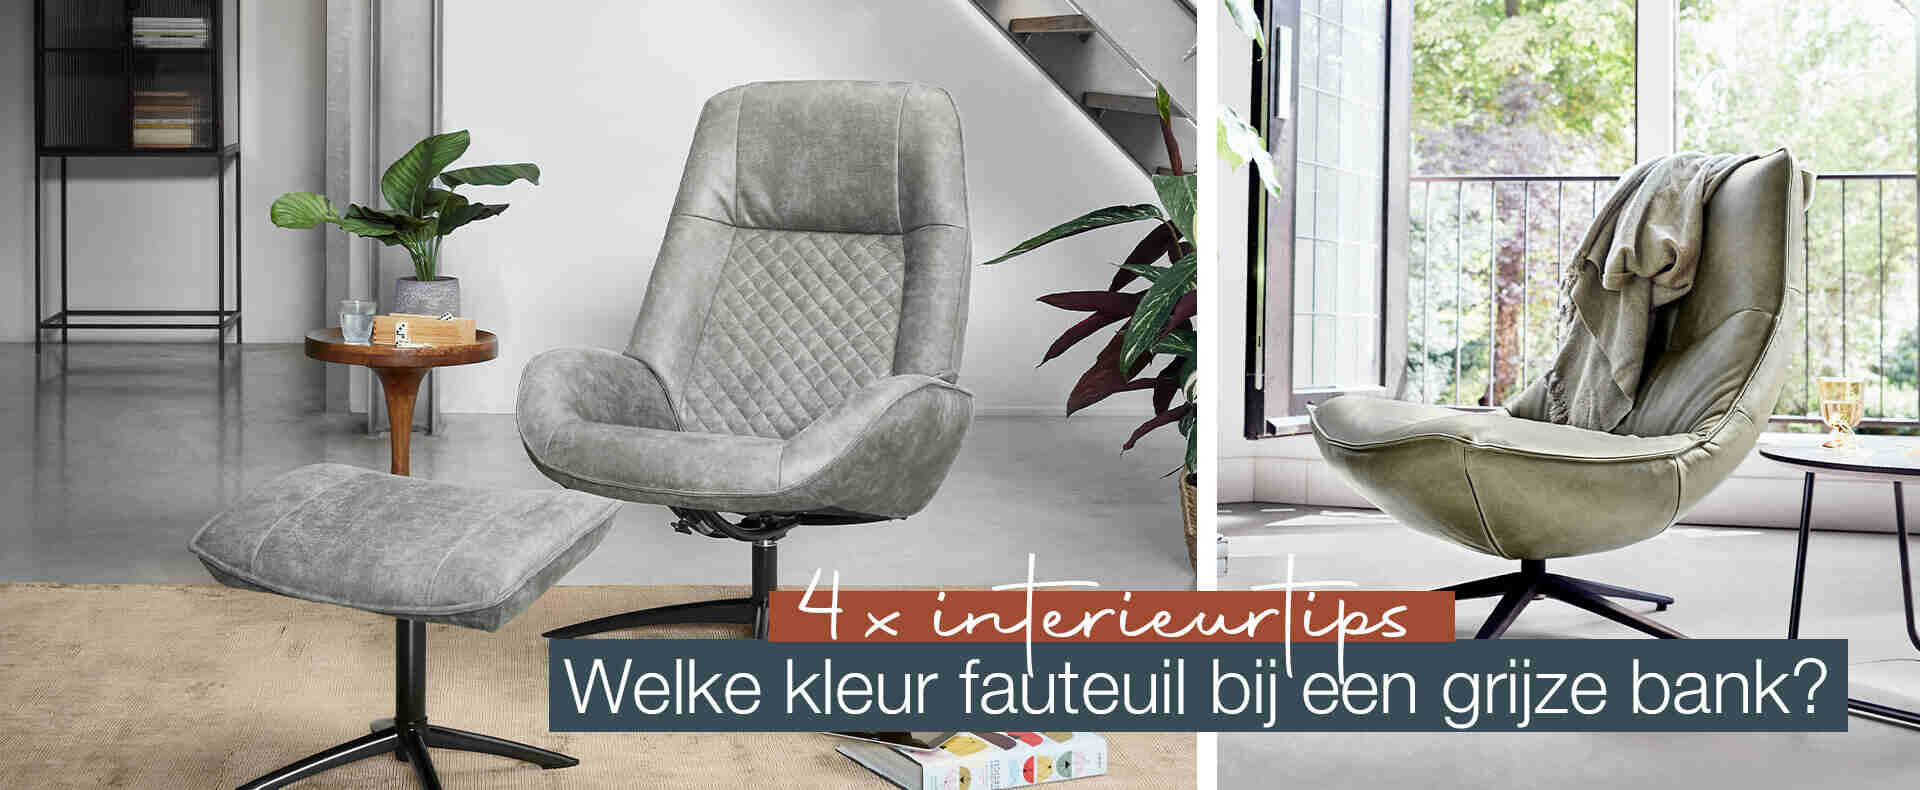 Grootte hoop Luiheid Voorkom rugklachten; Een (relax)fauteuil passend bij jouw wensen!